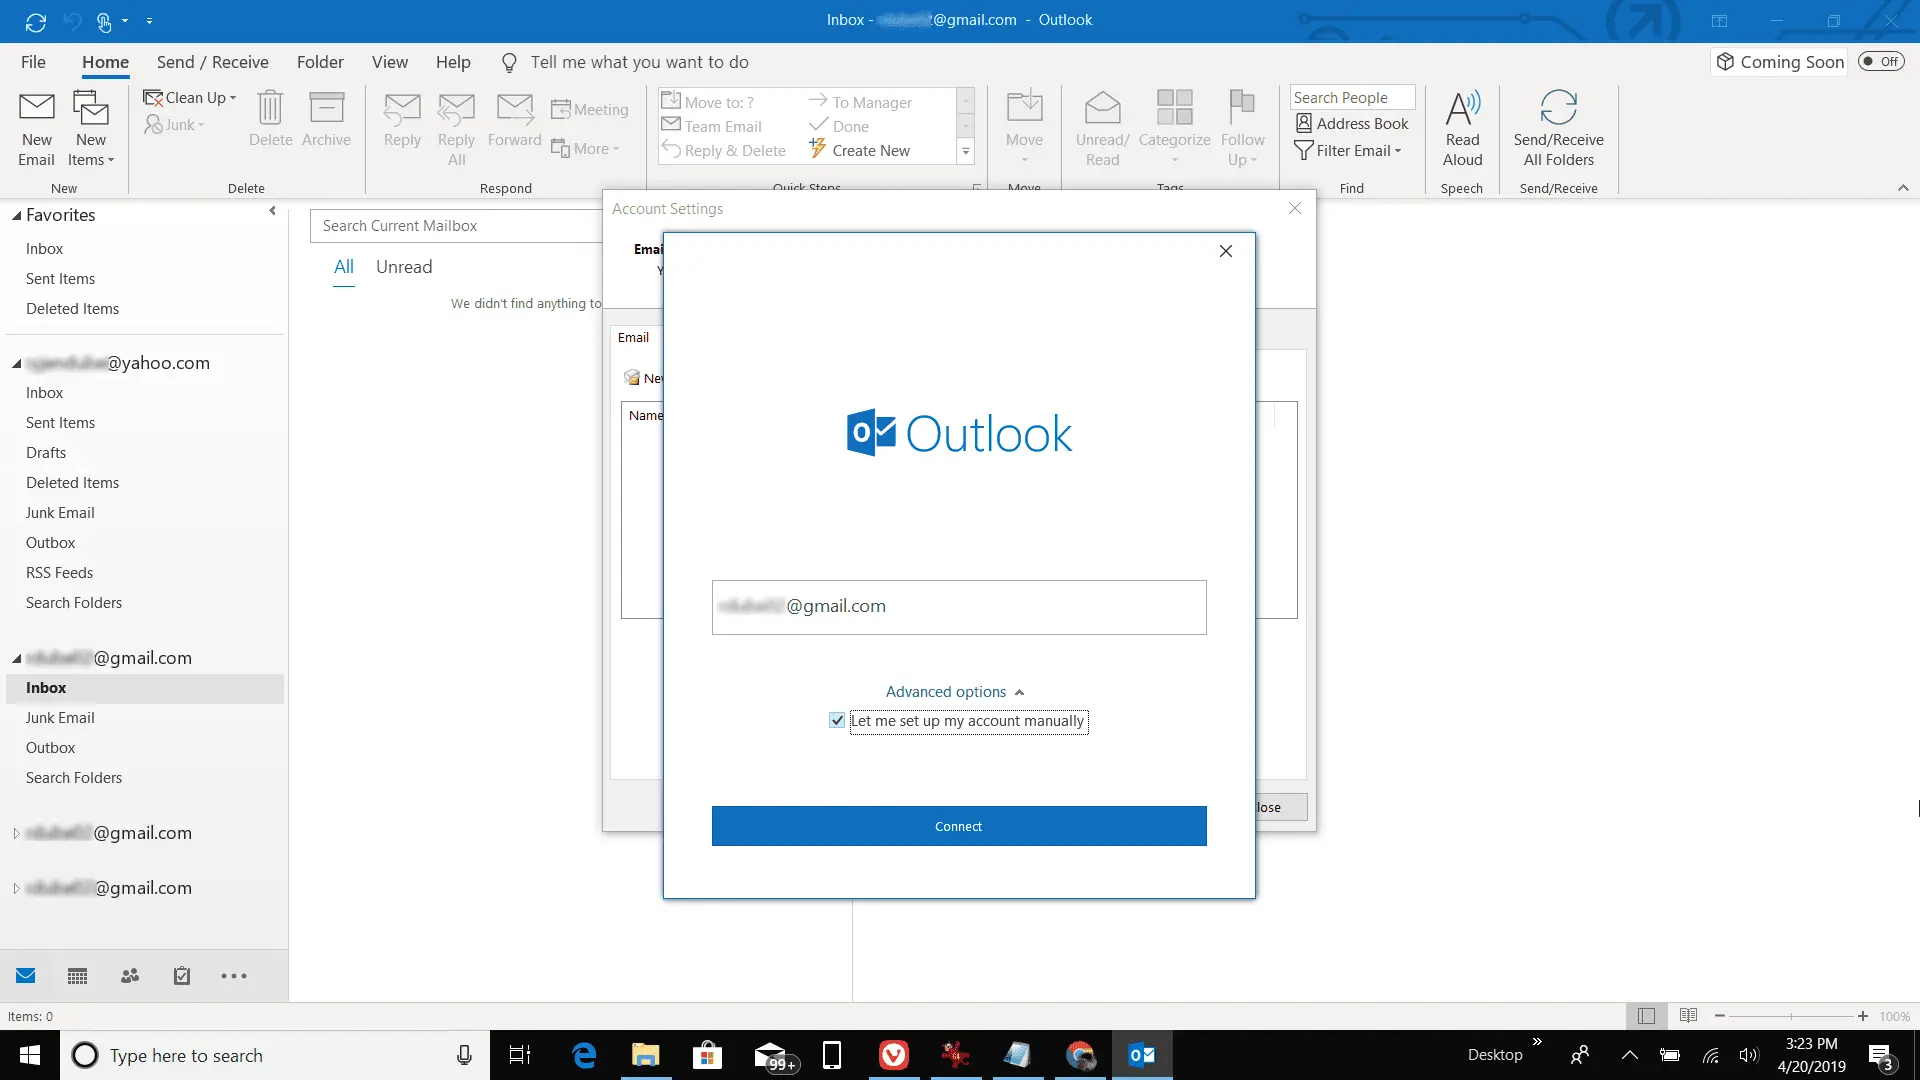 Captura de tela da adição de uma nova conta POP do gmail no Outlook